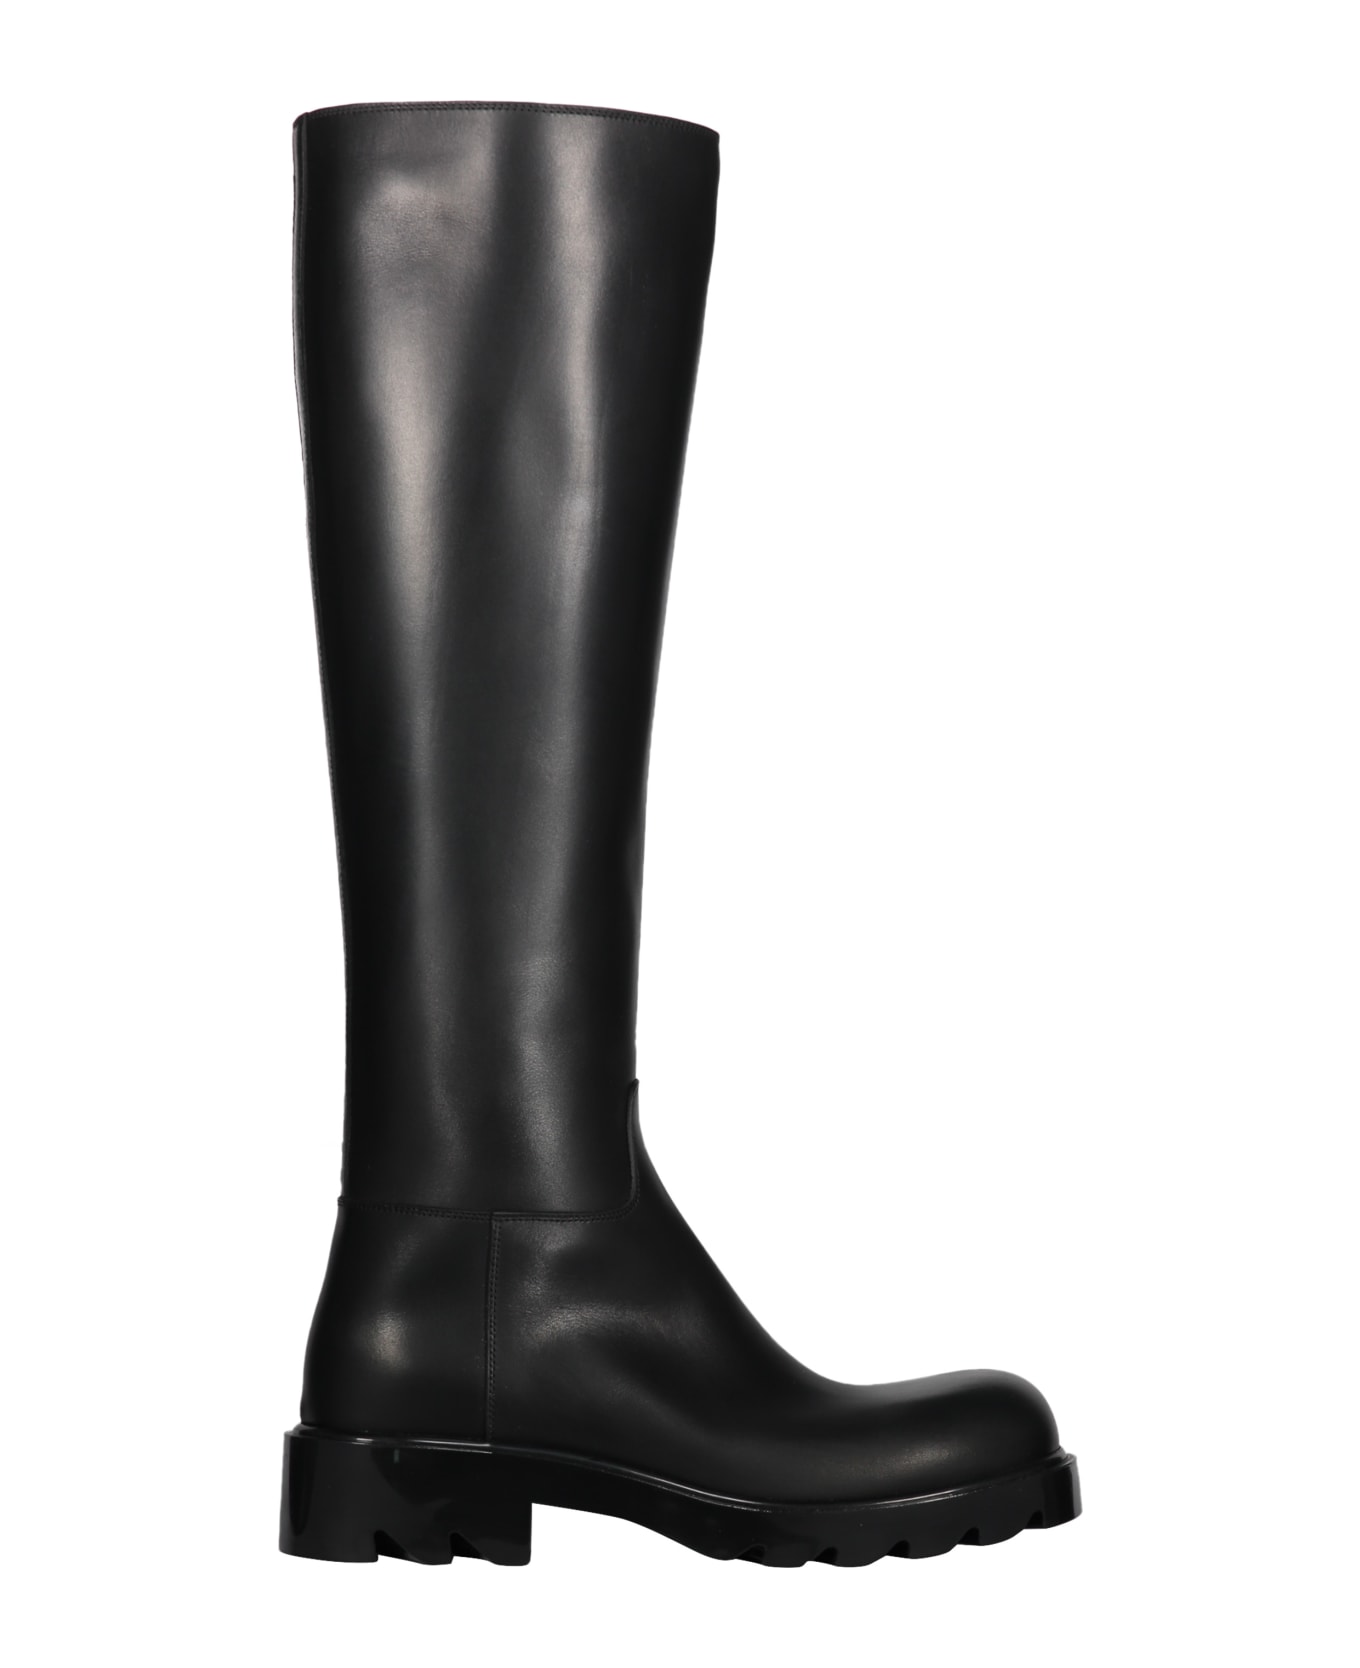 Bottega Veneta Strut Leather Boots - black ブーツ